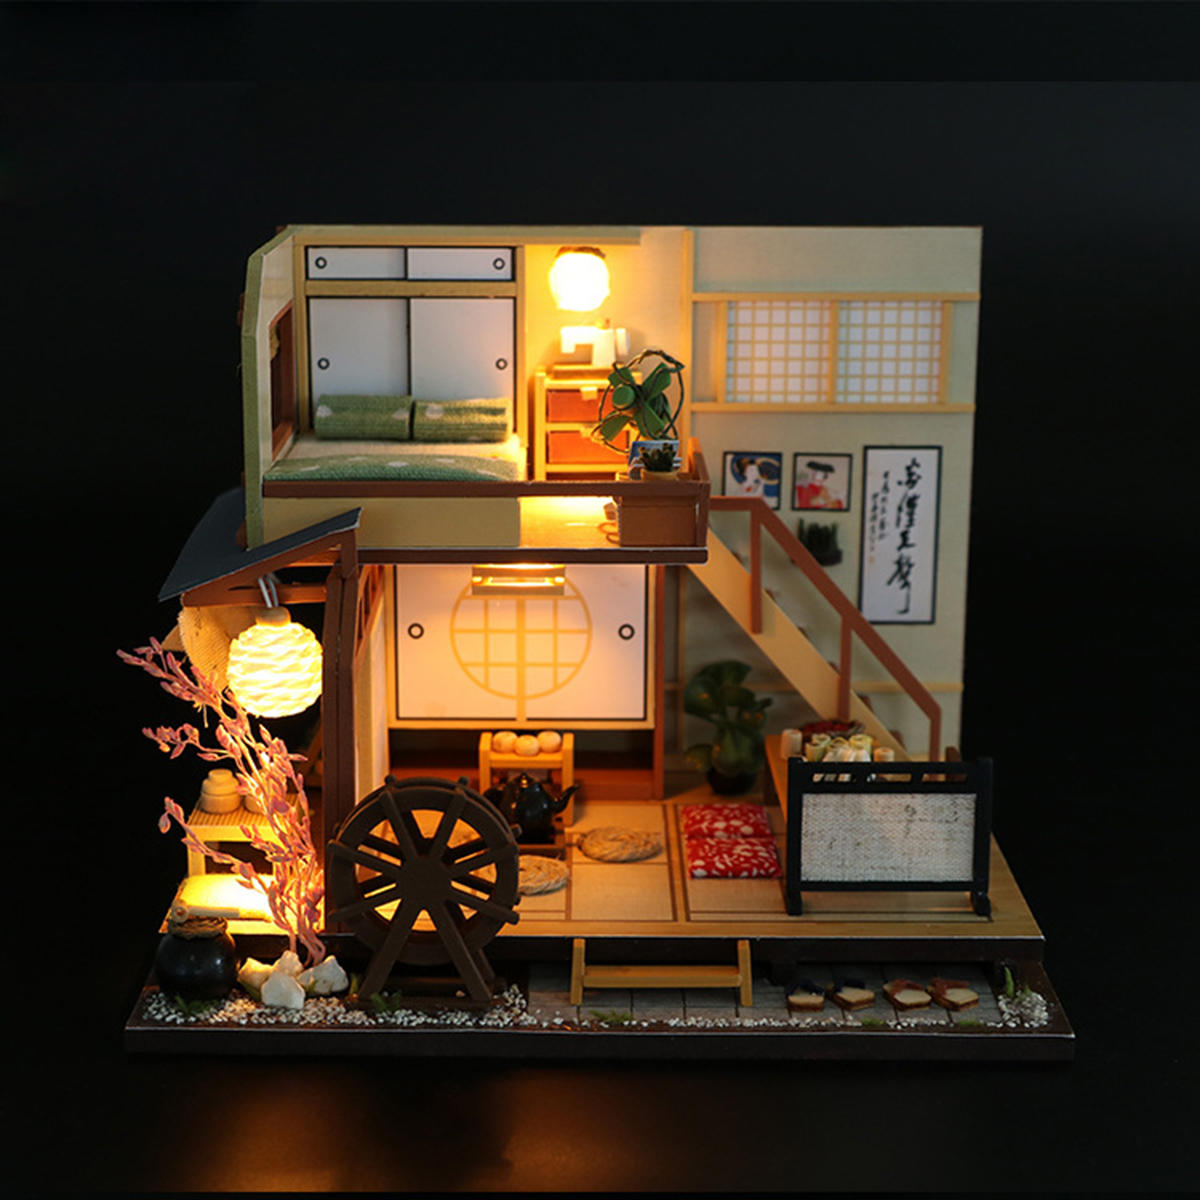 

DIY Кукольный домик Миниатюрная деревянная мебель LED Набор Японский стиль Handcraft Toy Doll House Gift